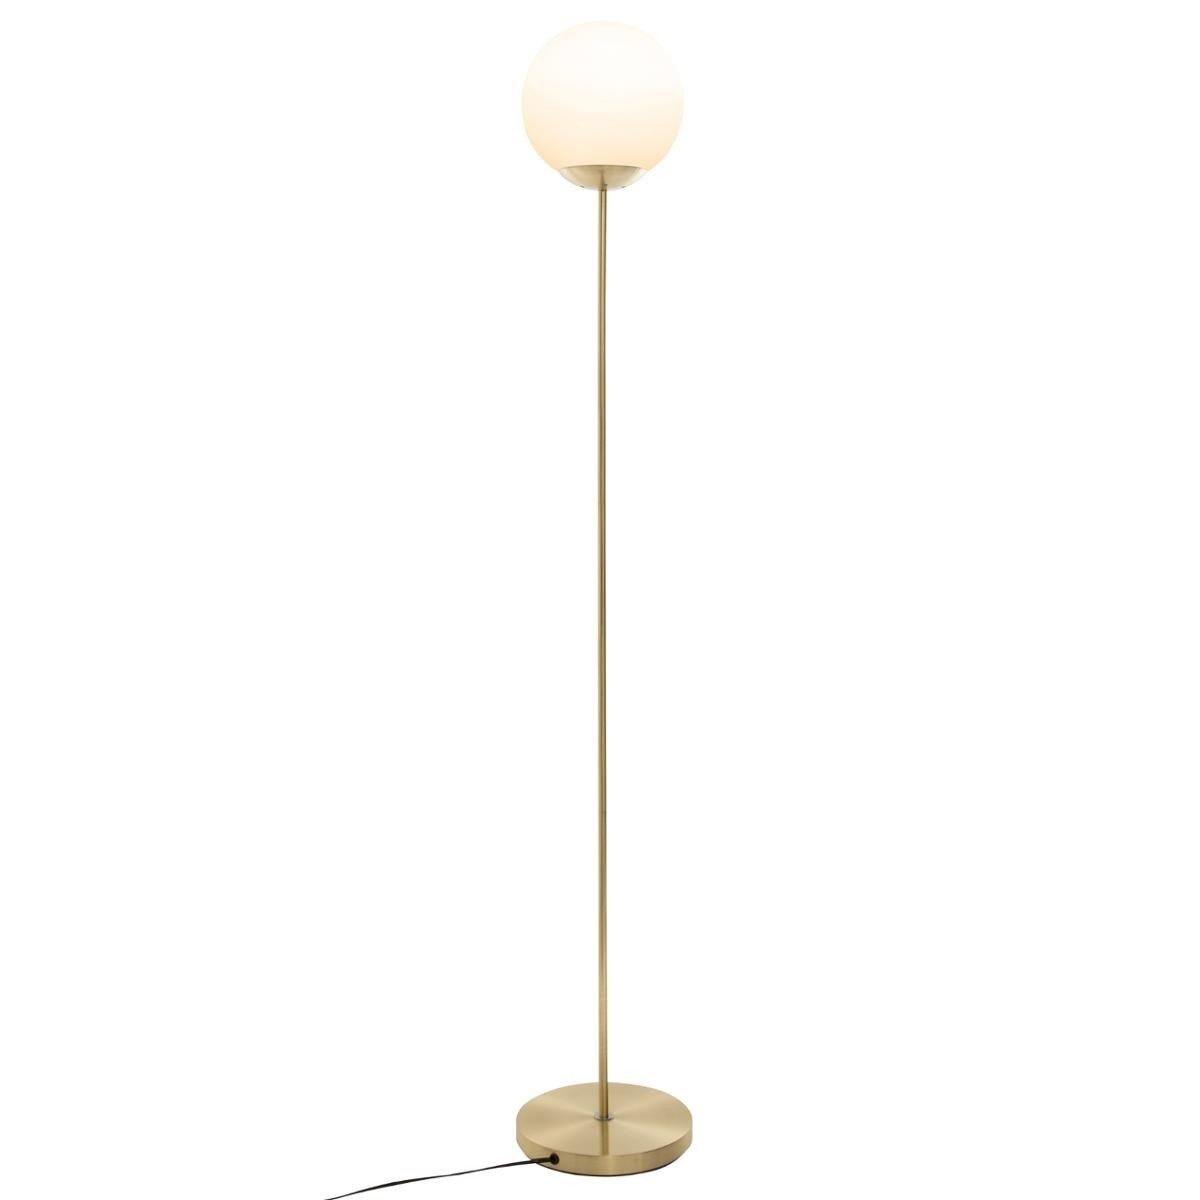 Lampa stojąca z okrągłym kloszem, metalowa, 134 cm